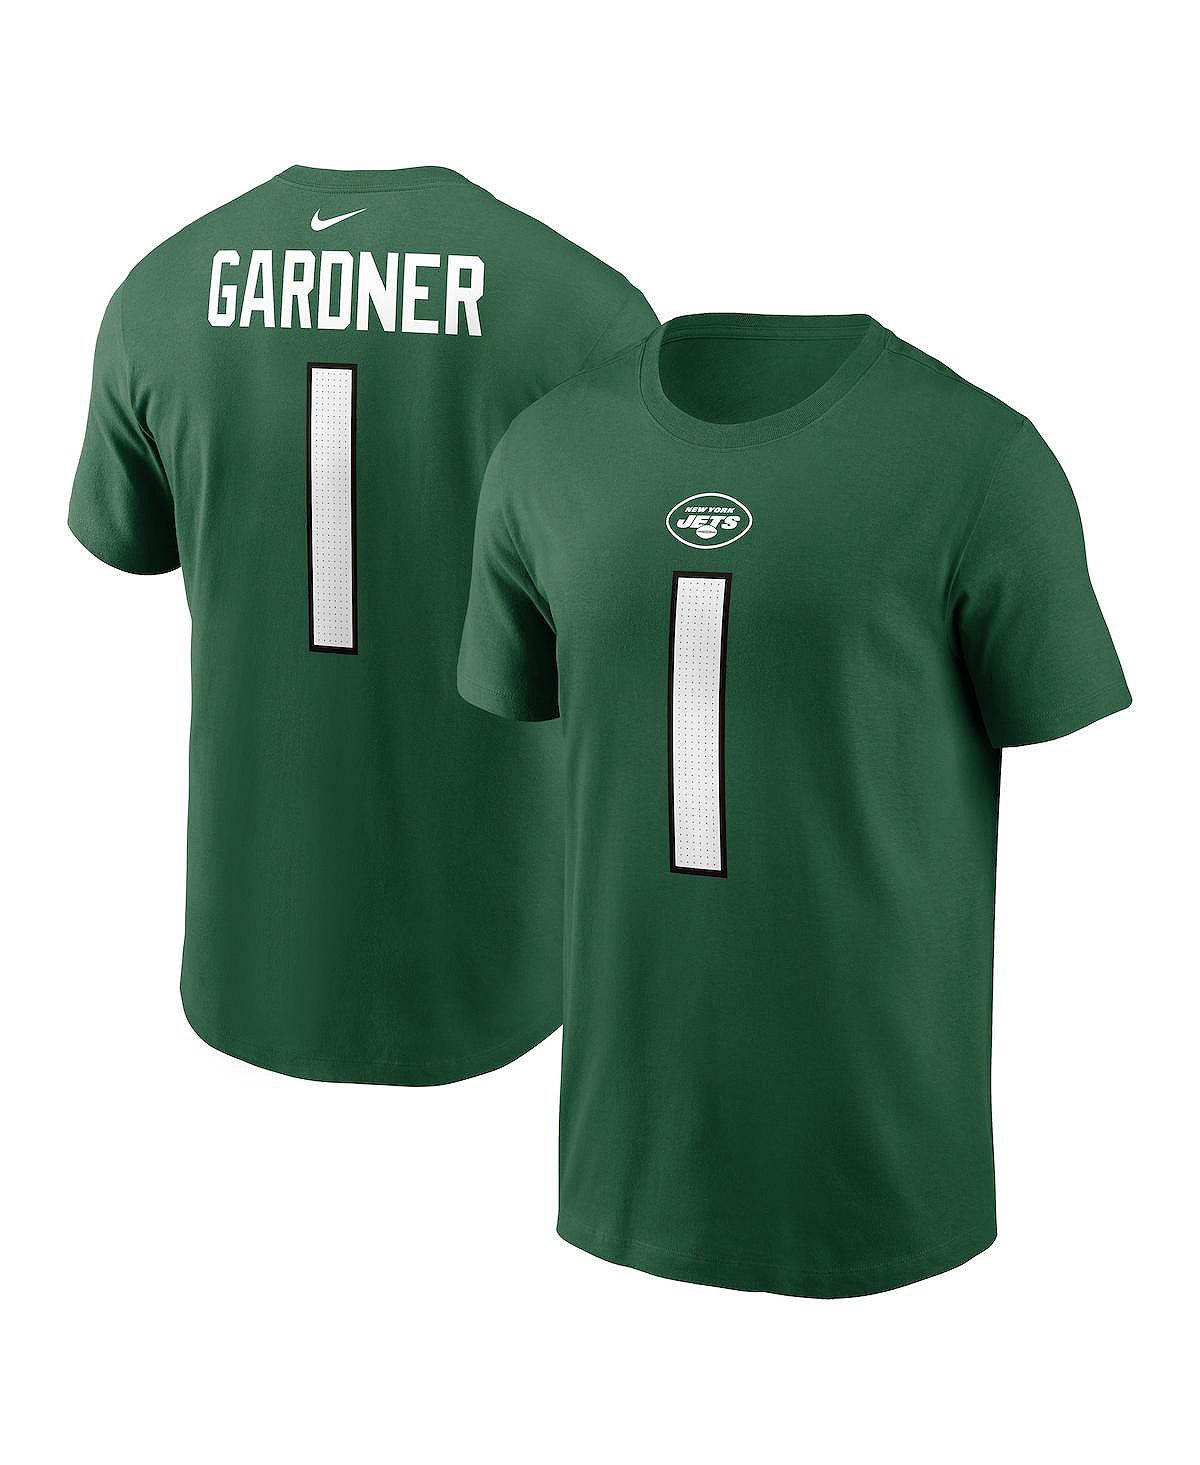 Мужская футболка Sauce Gardner Green New York Jets с именем и номером игрока Nike gardner john scorpius